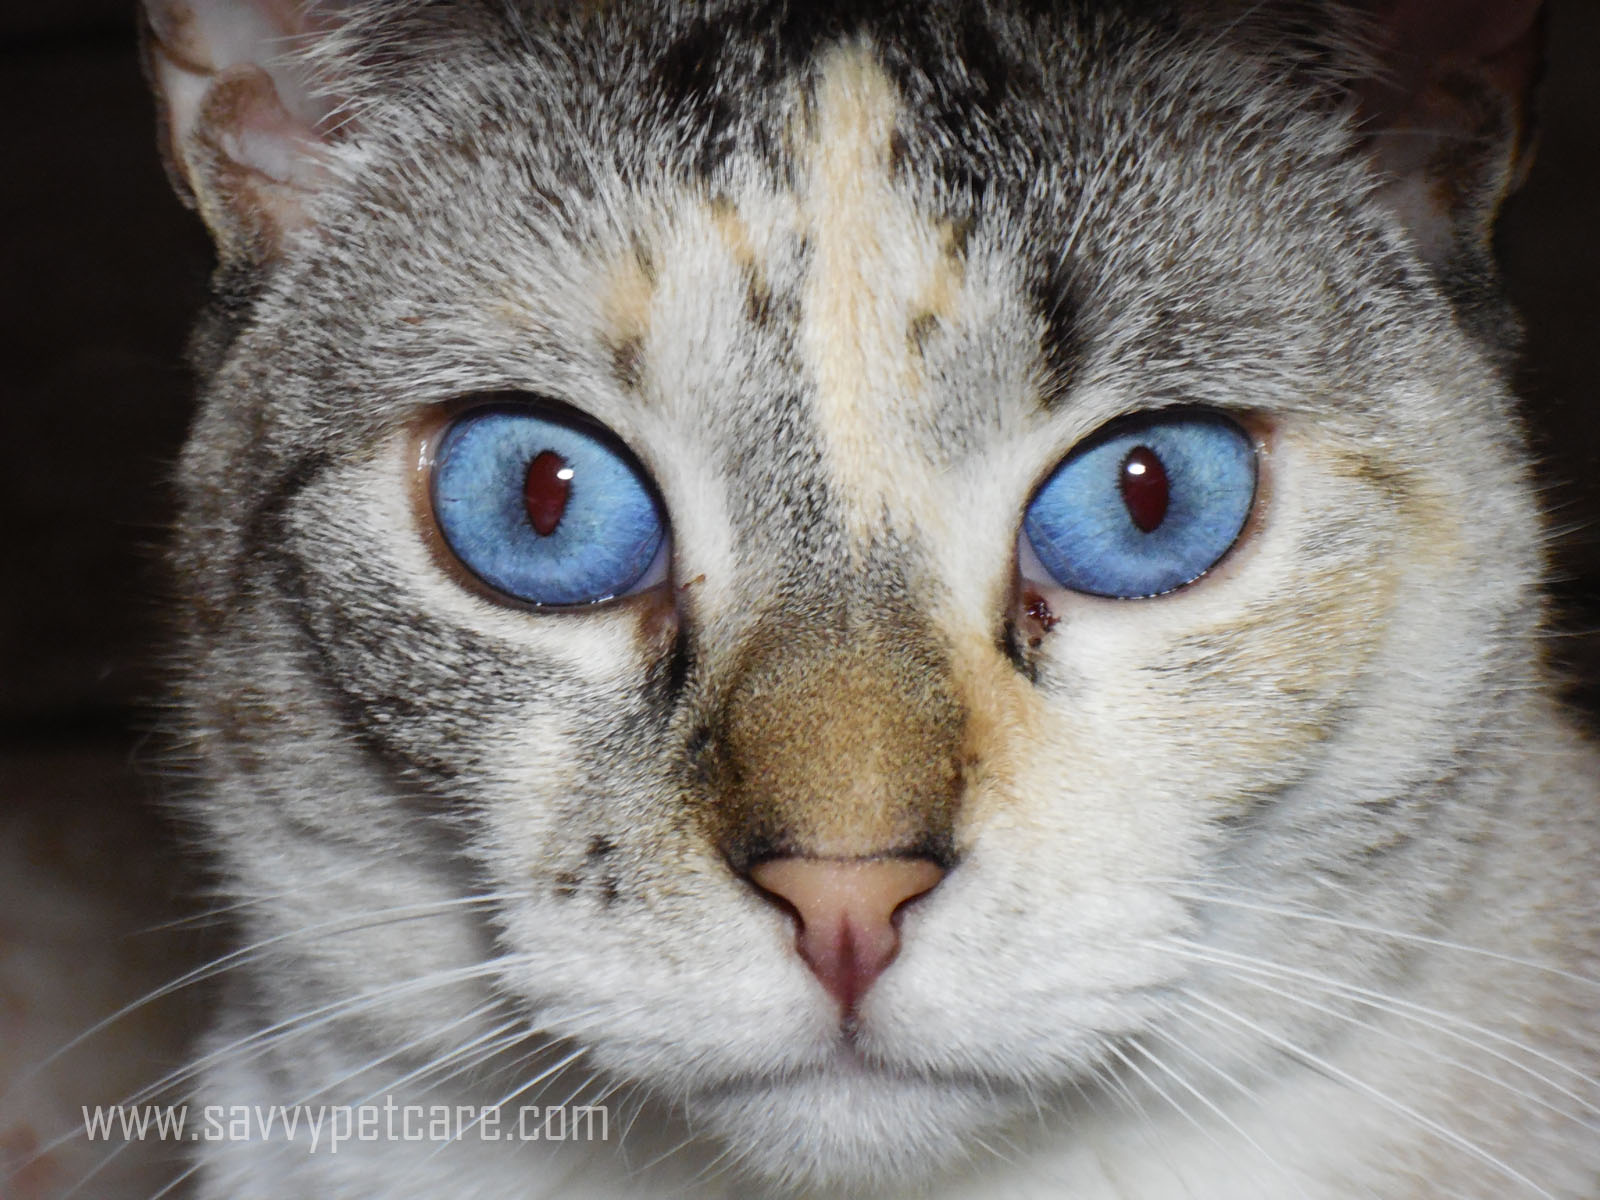 Wordless Wednesday: Amazing Blue Eyes